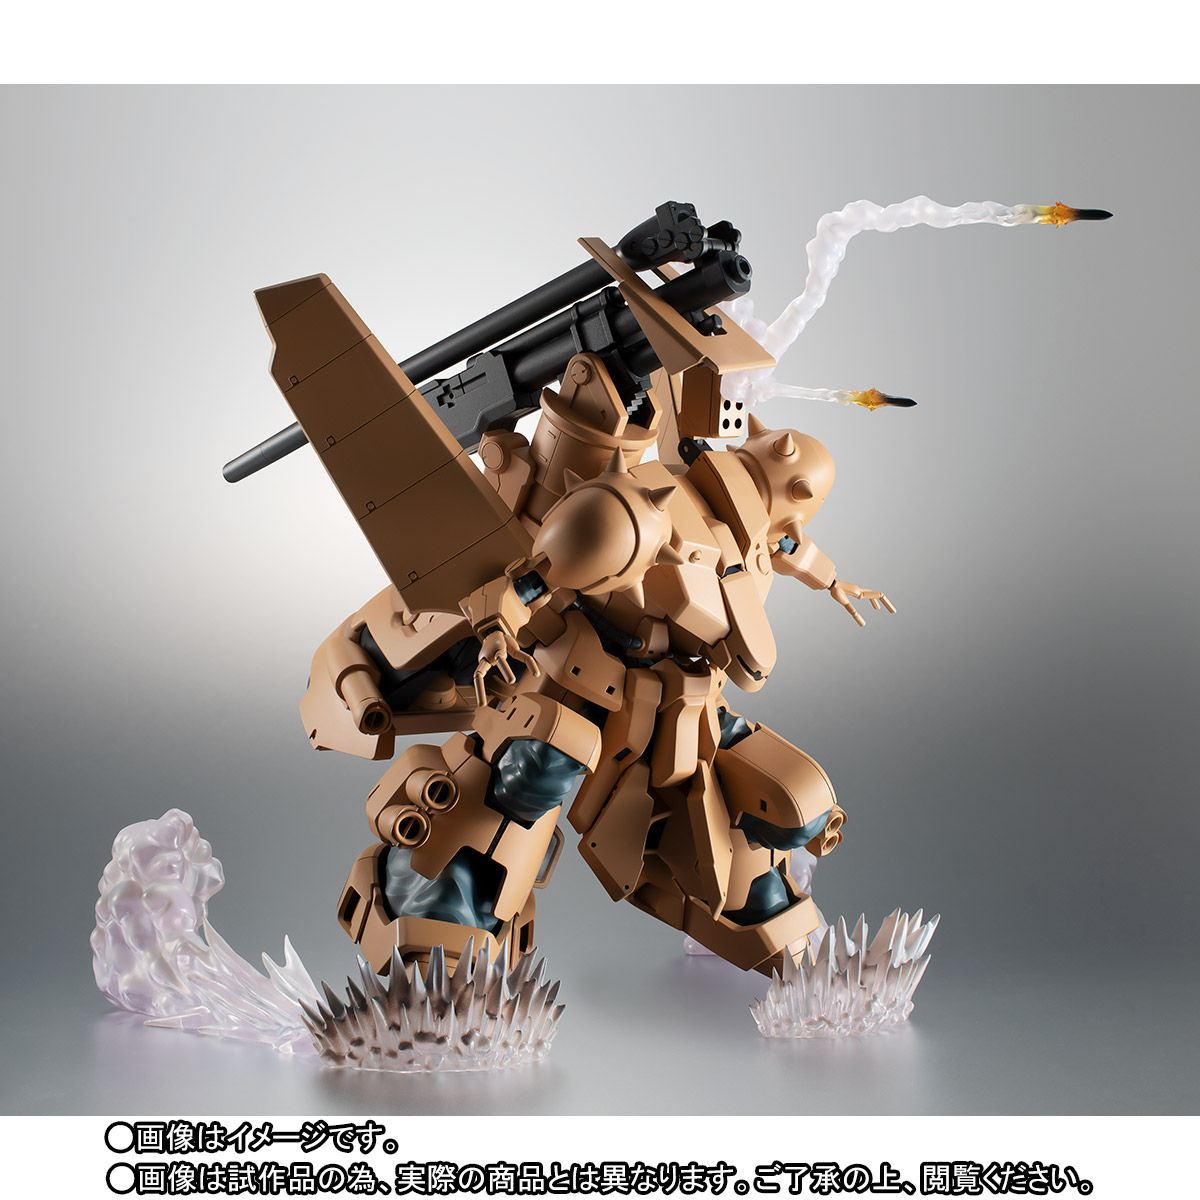 【限定販売】ROBOT魂〈SIDE MS〉『YMS-16M ザメル ver. A.N.I.M.E.』機動戦士ガンダム0083 可動フィギュア-004